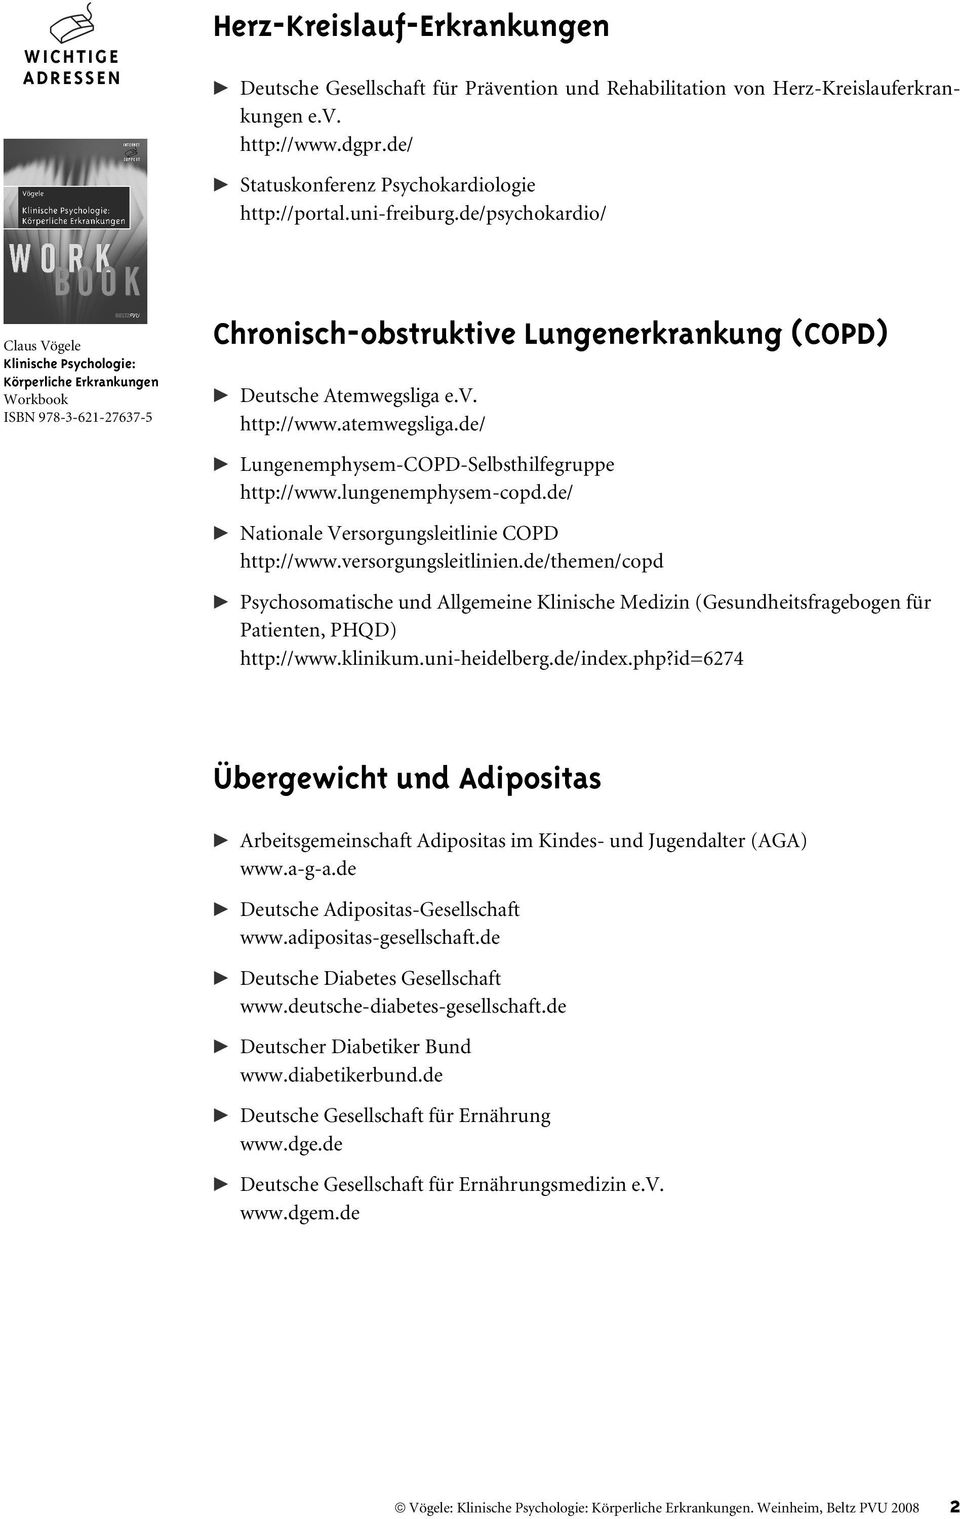 de/ Nationale Versorgungsleitlinie COPD http://www.versorgungsleitlinien.de/themen/copd Psychosomatische und Allgemeine Klinische Medizin (Gesundheitsfragebogen für Patienten, PHQD) http://www.